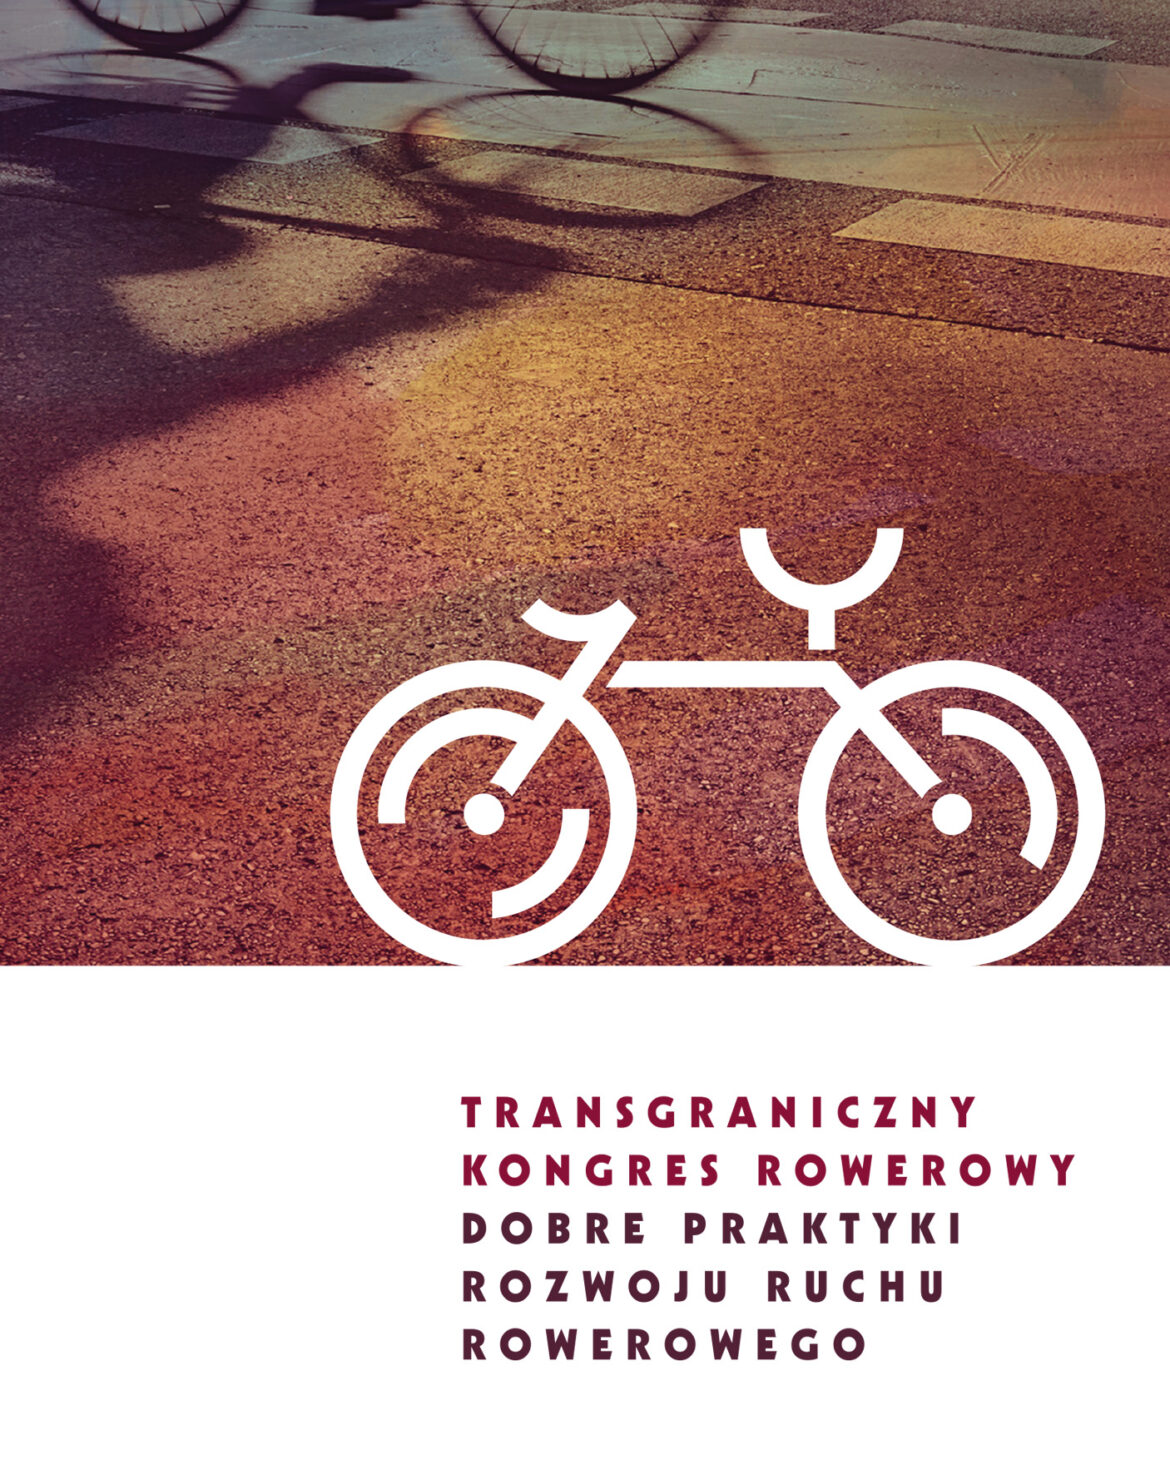 Transgraniczny Kongres Rowerowy „Dobre praktyki rozwoju ruchu rowerowego” | Wrocław